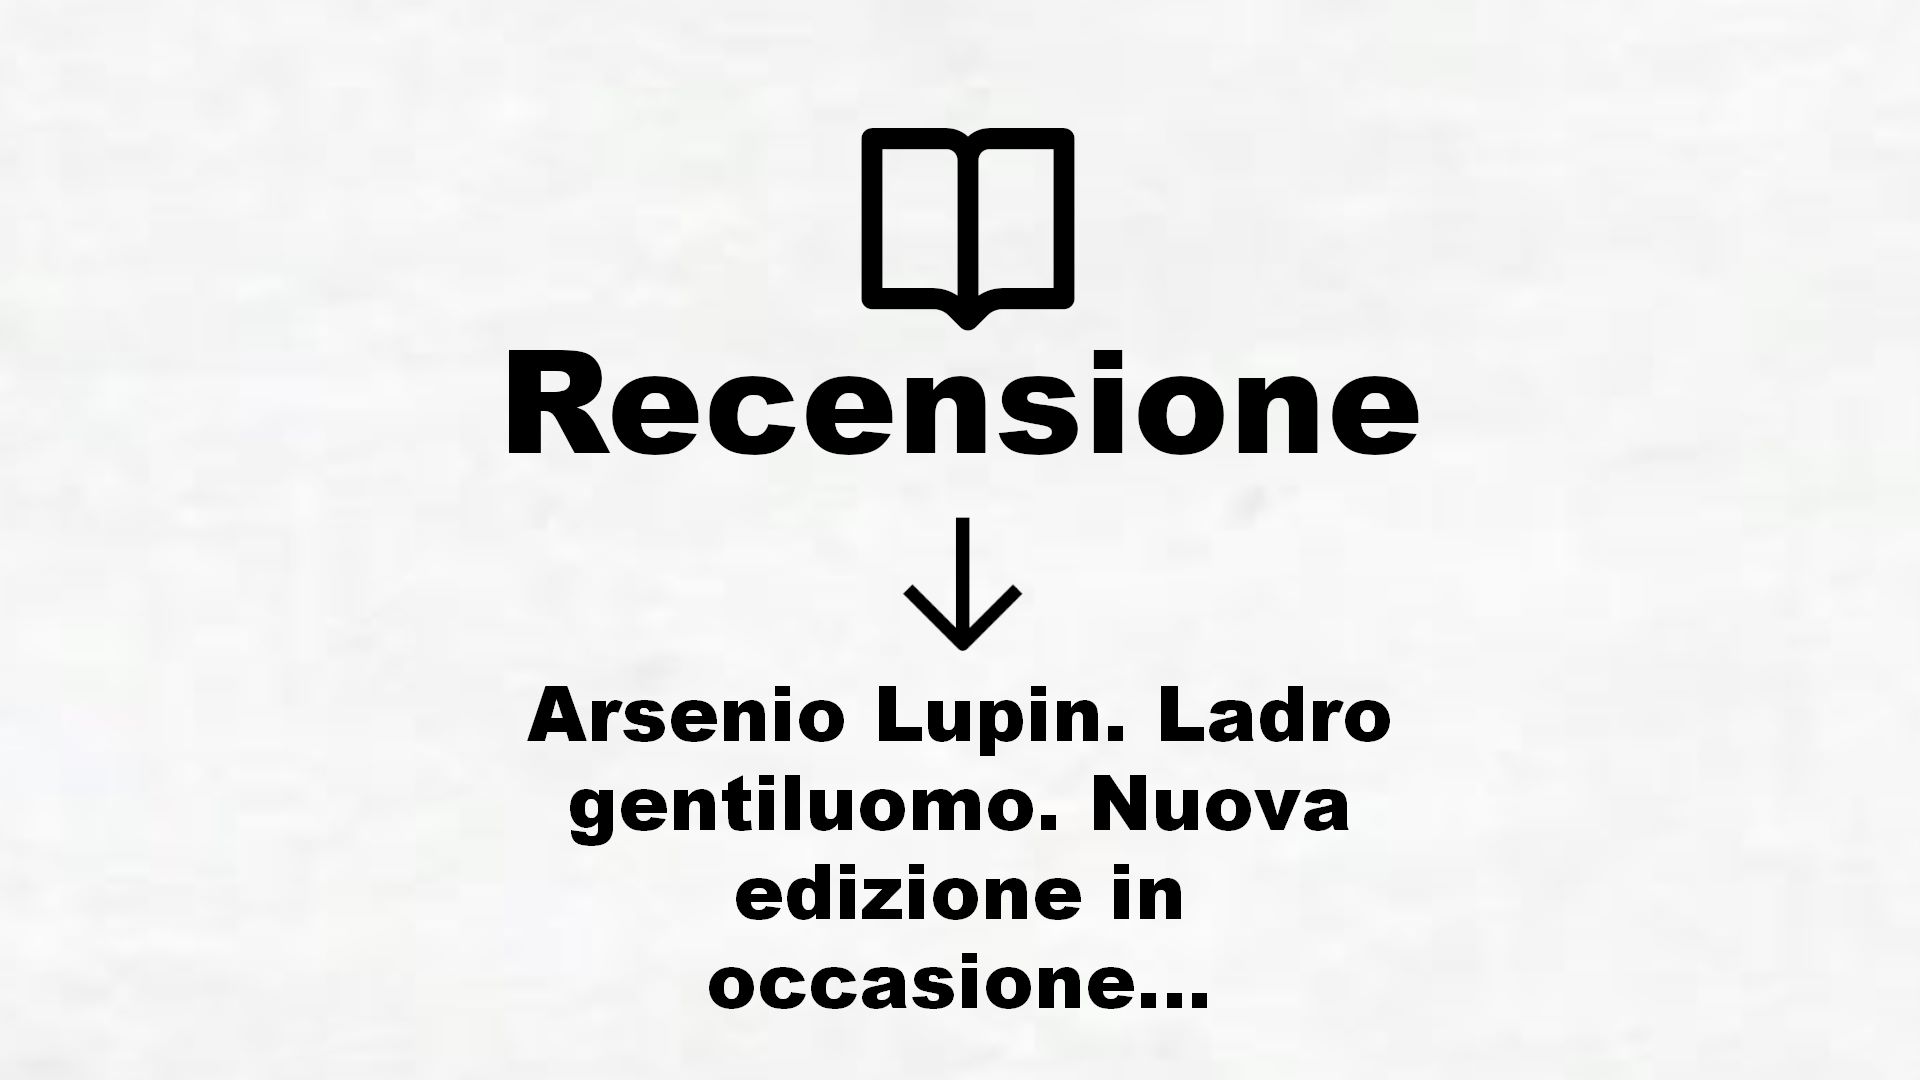 Arsenio Lupin. Ladro gentiluomo. Nuova edizione in occasione della serie Netflix – Recensione Libro